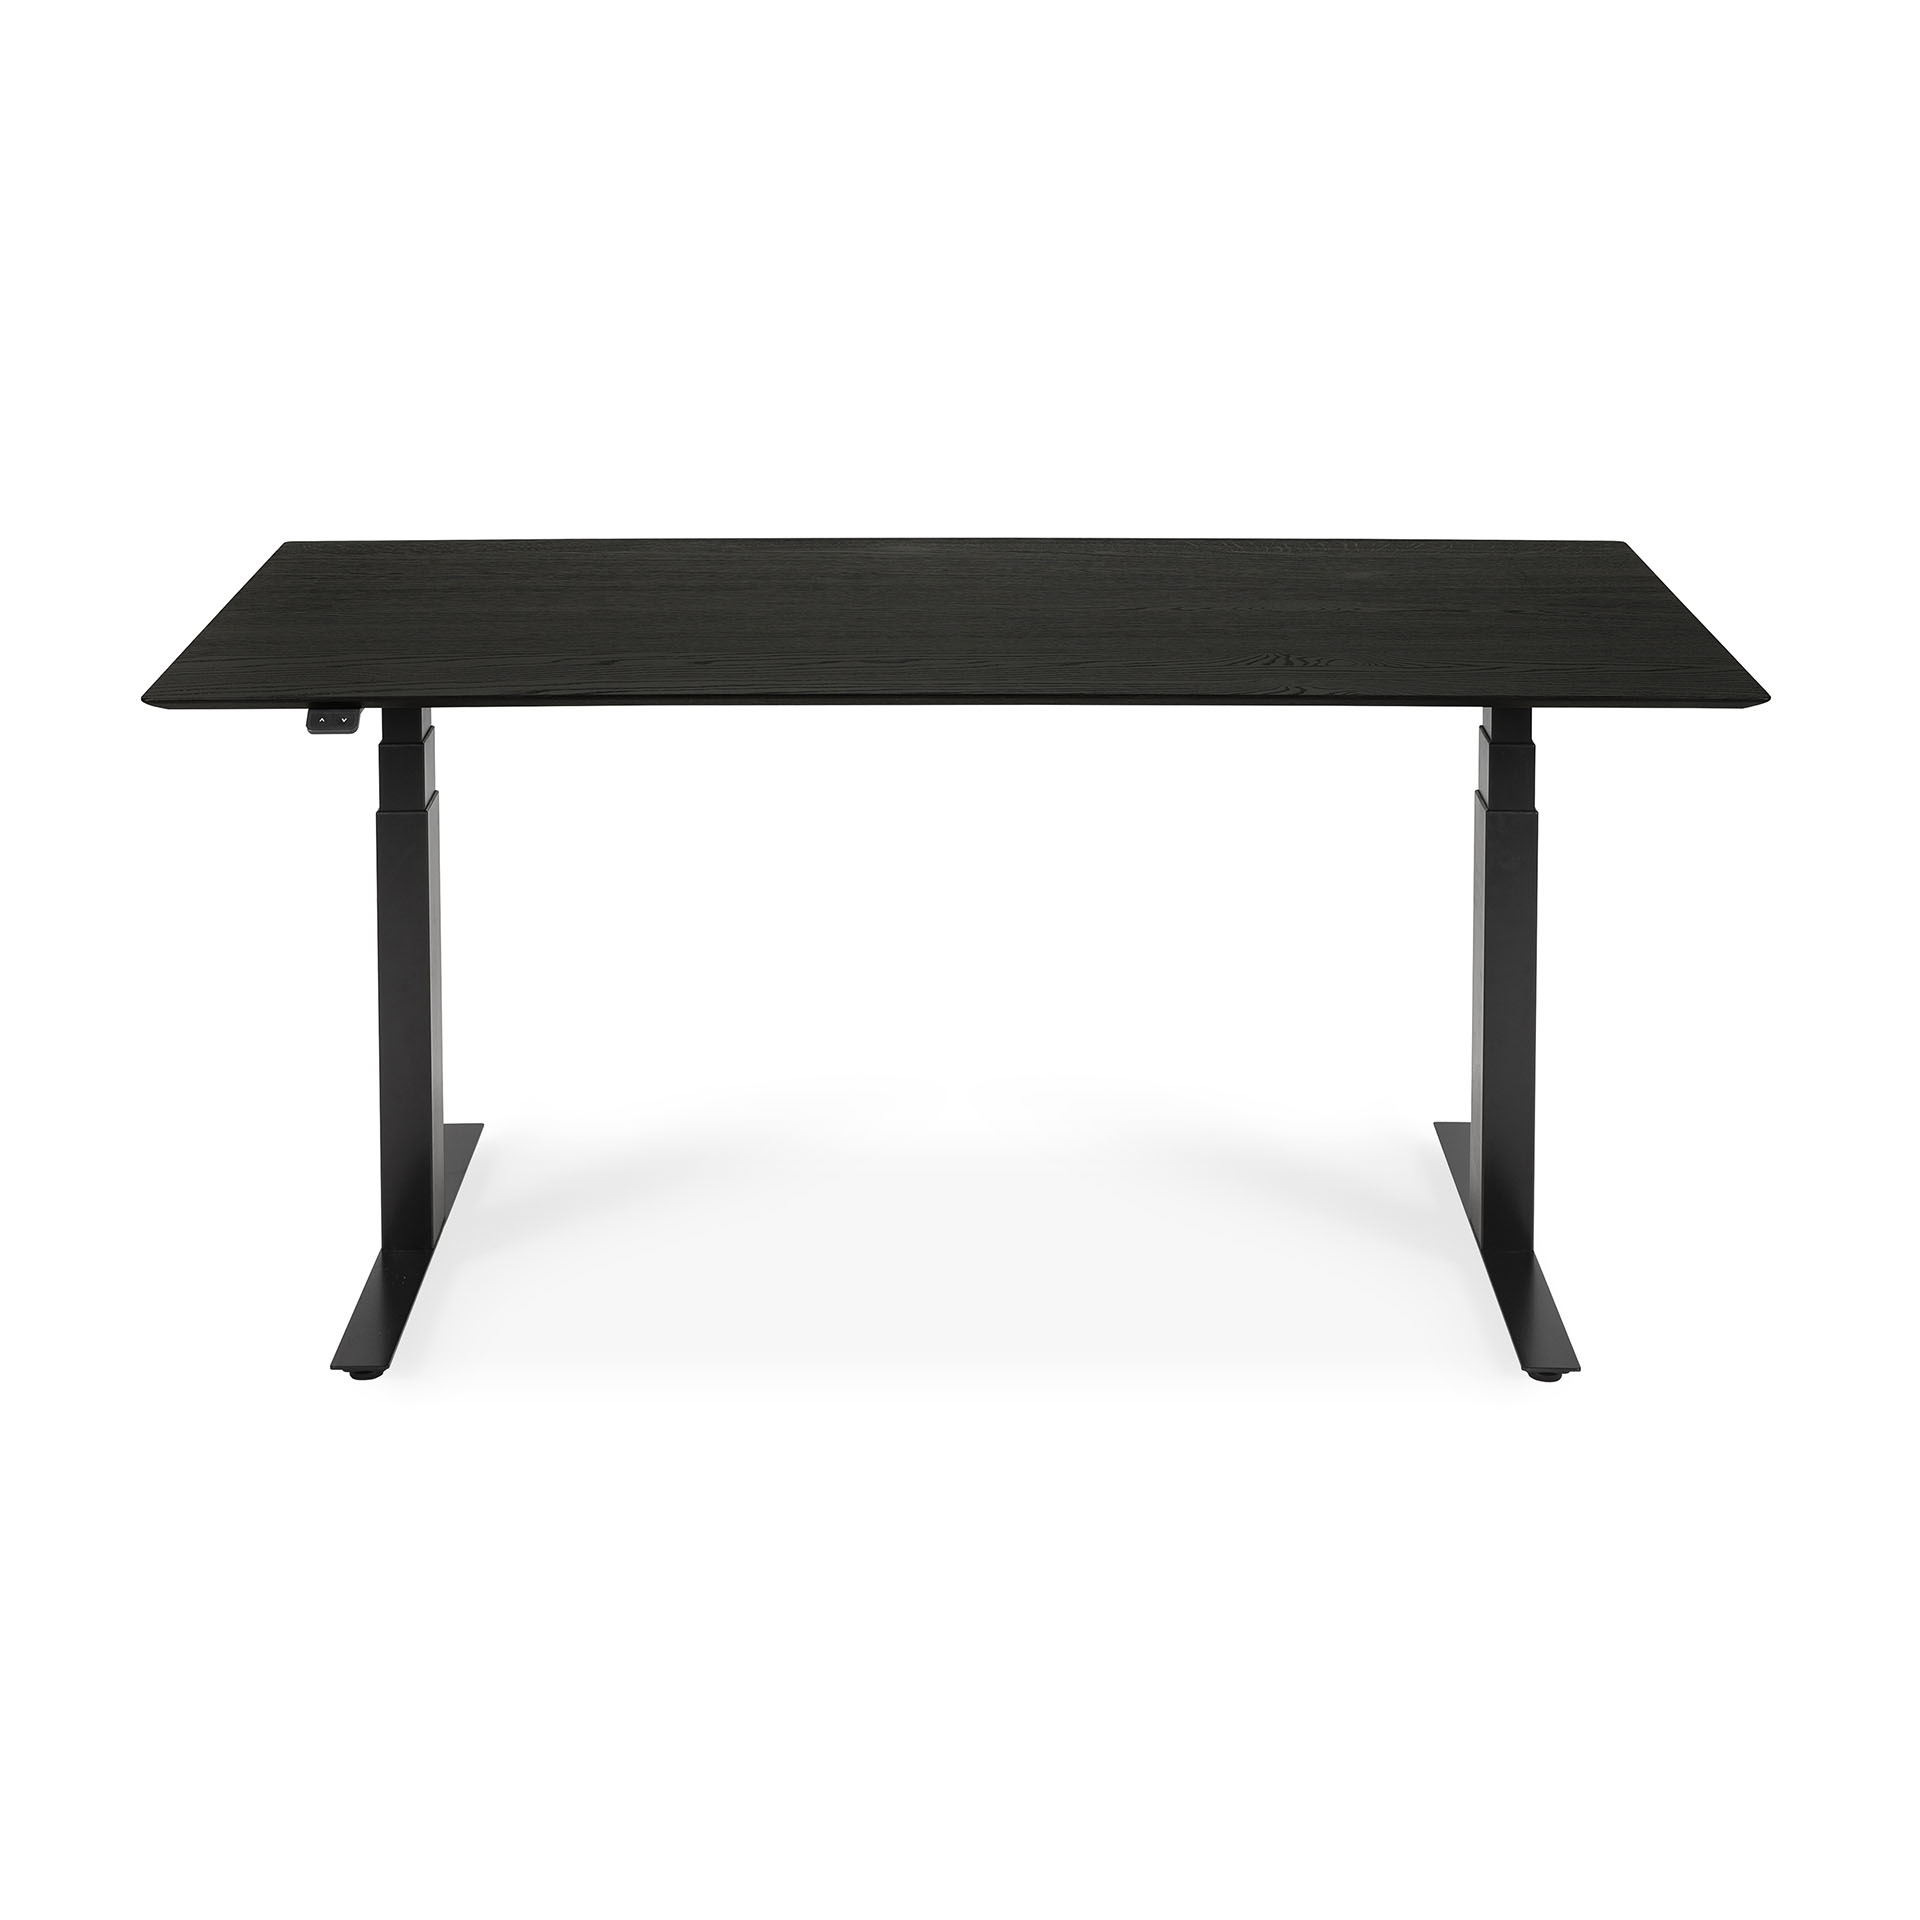 Oak_Black_Table_Top_Bok_Adjustable_Desk_Ethnicraft